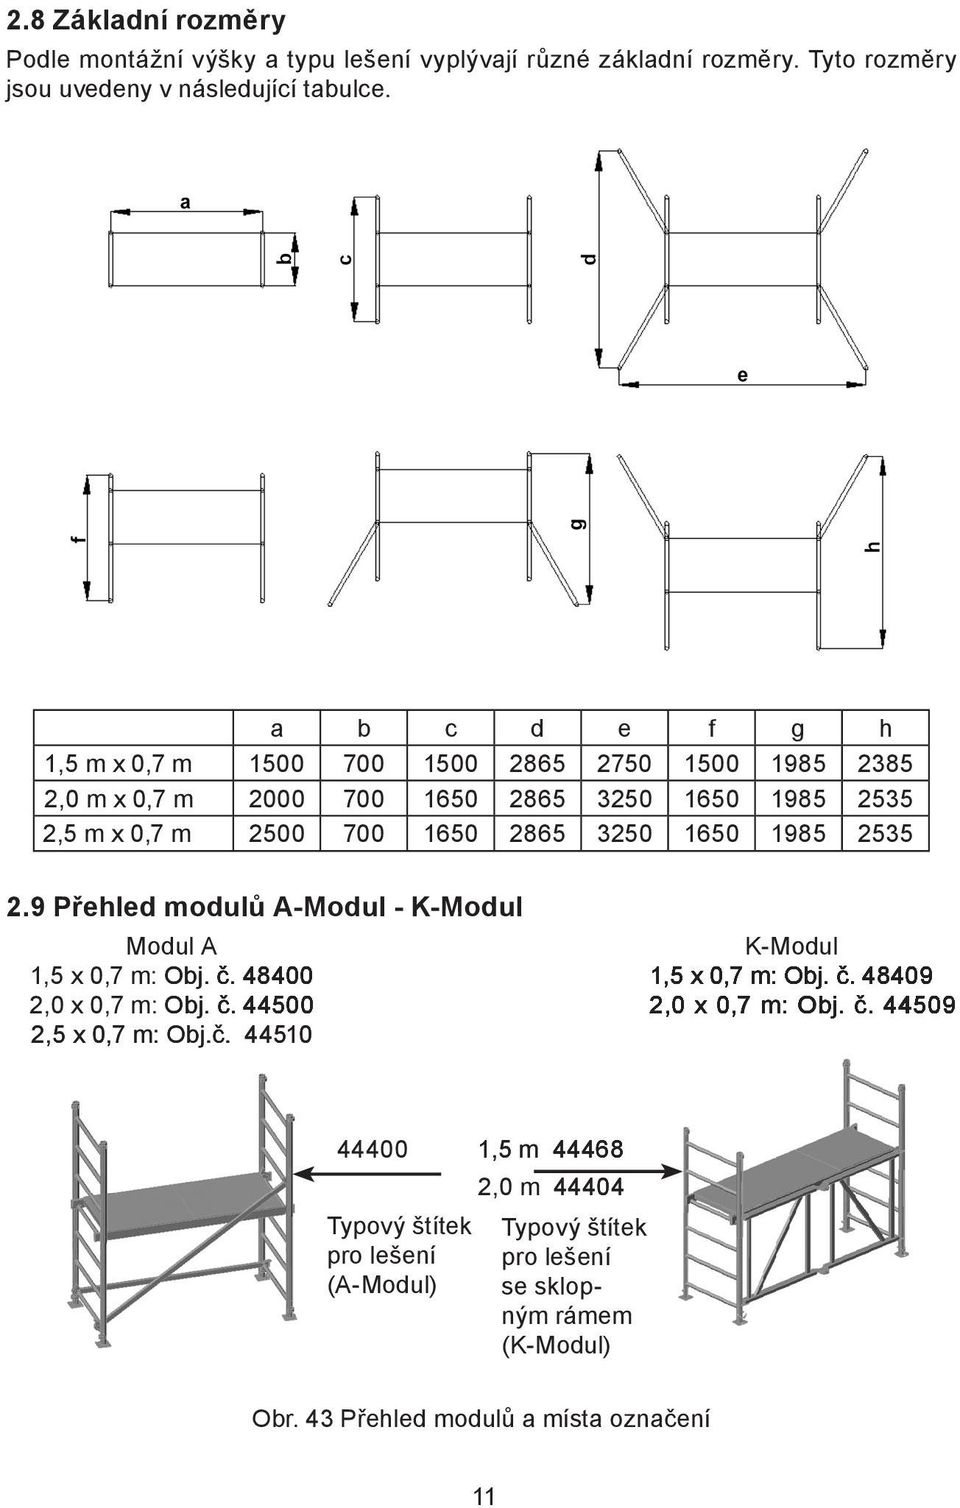 1985 2535 2.9 Přehled modulů A-Modul - K-Modul Modul A K-Modul 1,5 x 0,7 m: Obj. č. 48400 1,5 x 0,7 m: Obj. č. 48409 2,0 x 0,7 m: Obj. č. 44500 2,0 x 0,7 m: Obj. č. 44509 2,5 x 0,7 m: Obj.